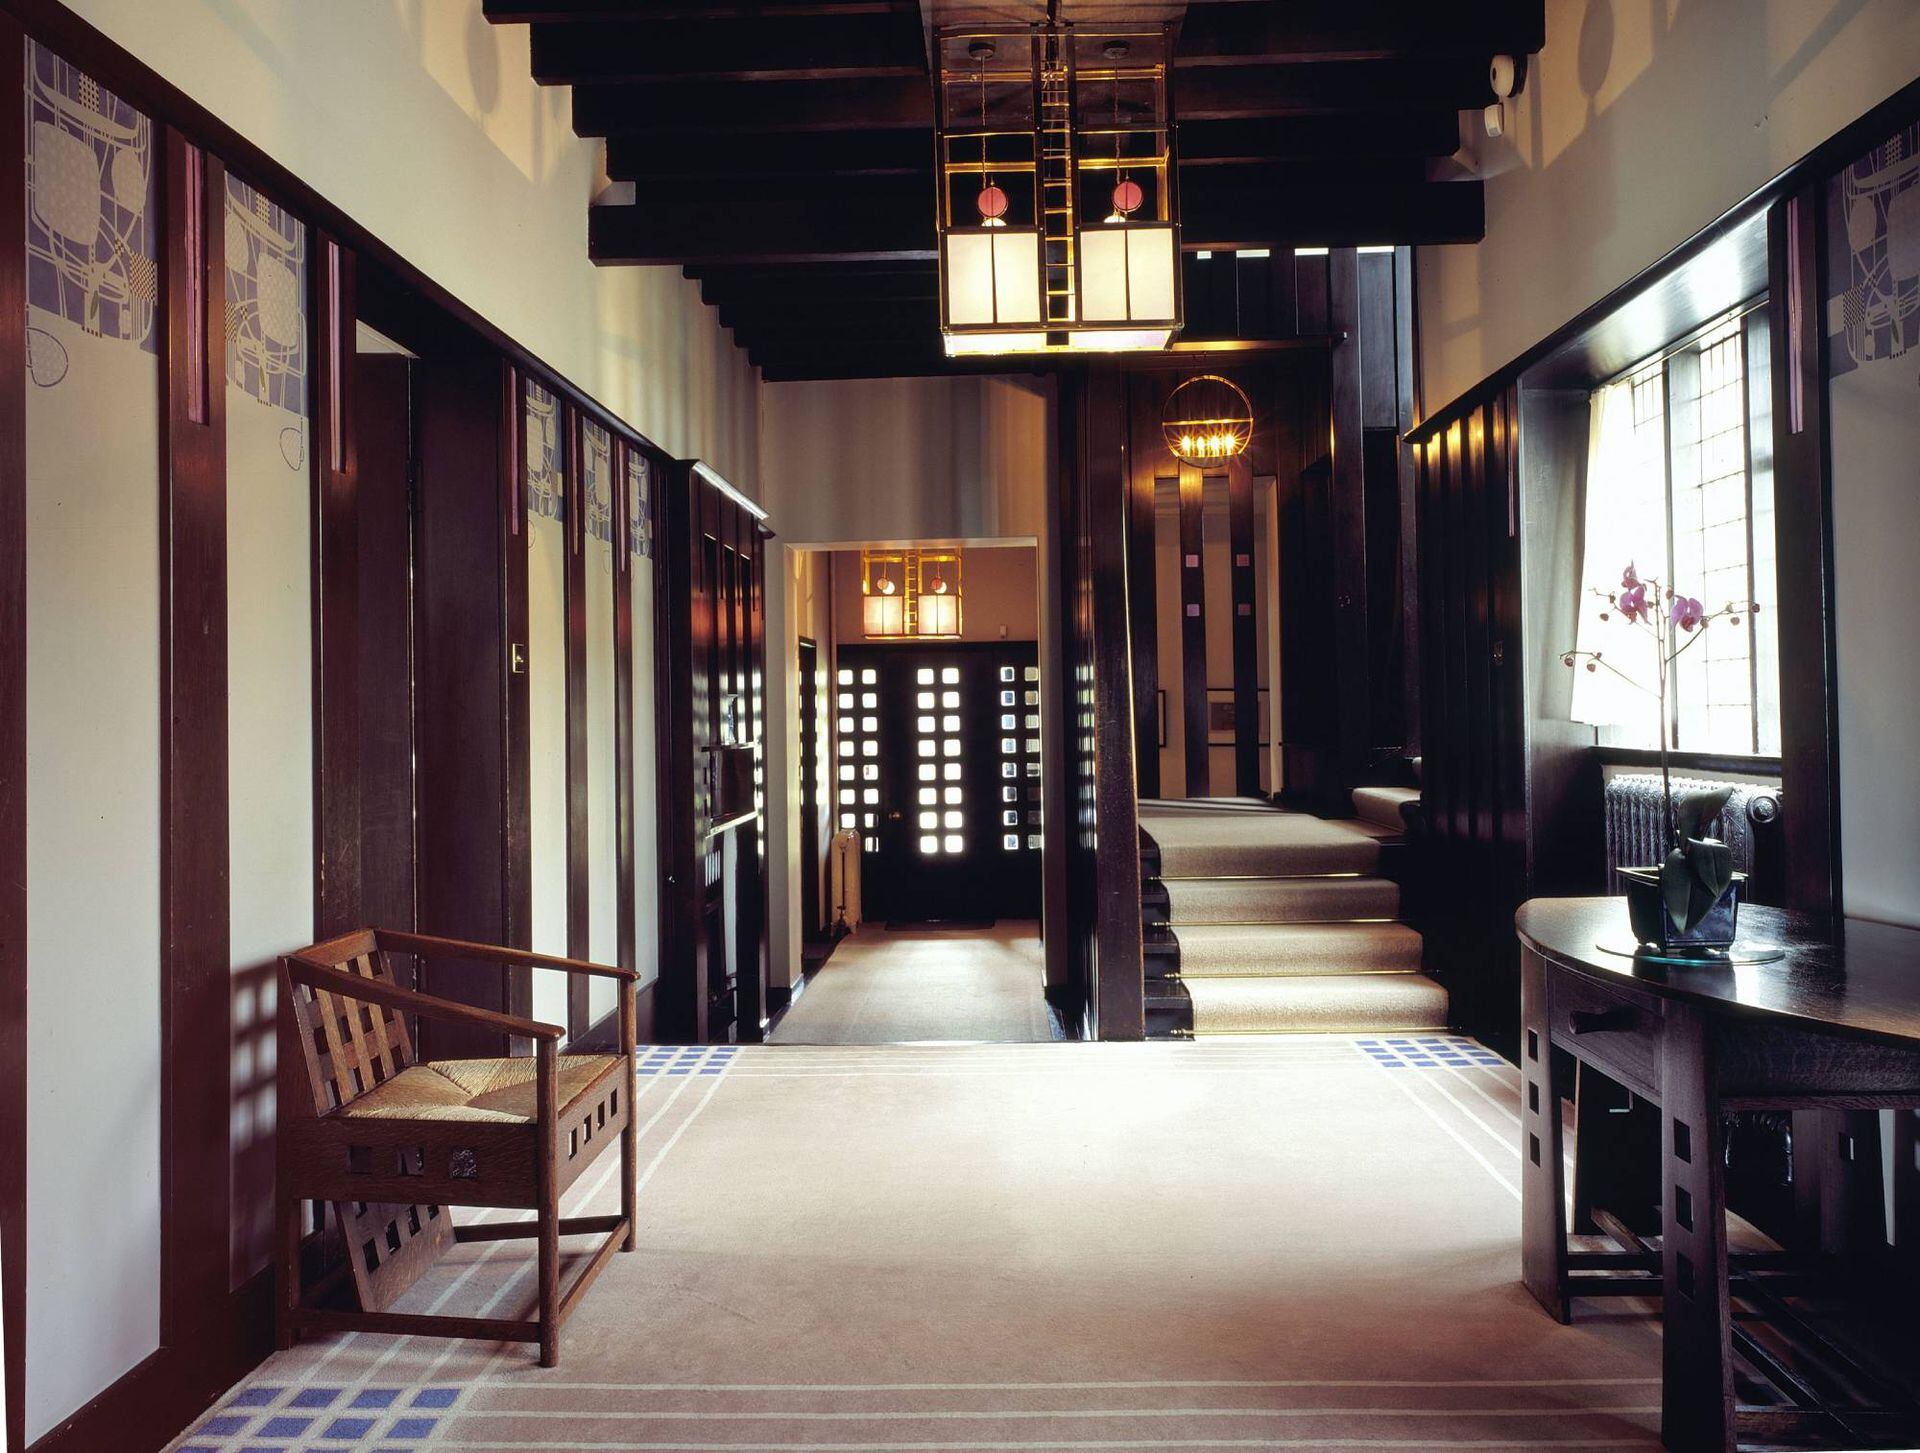 Los interiores de Hill House fueron imaginados por Mackintosh y su mujer Margaret . La ambientación mixtura el art noveau y art déco con maestría.